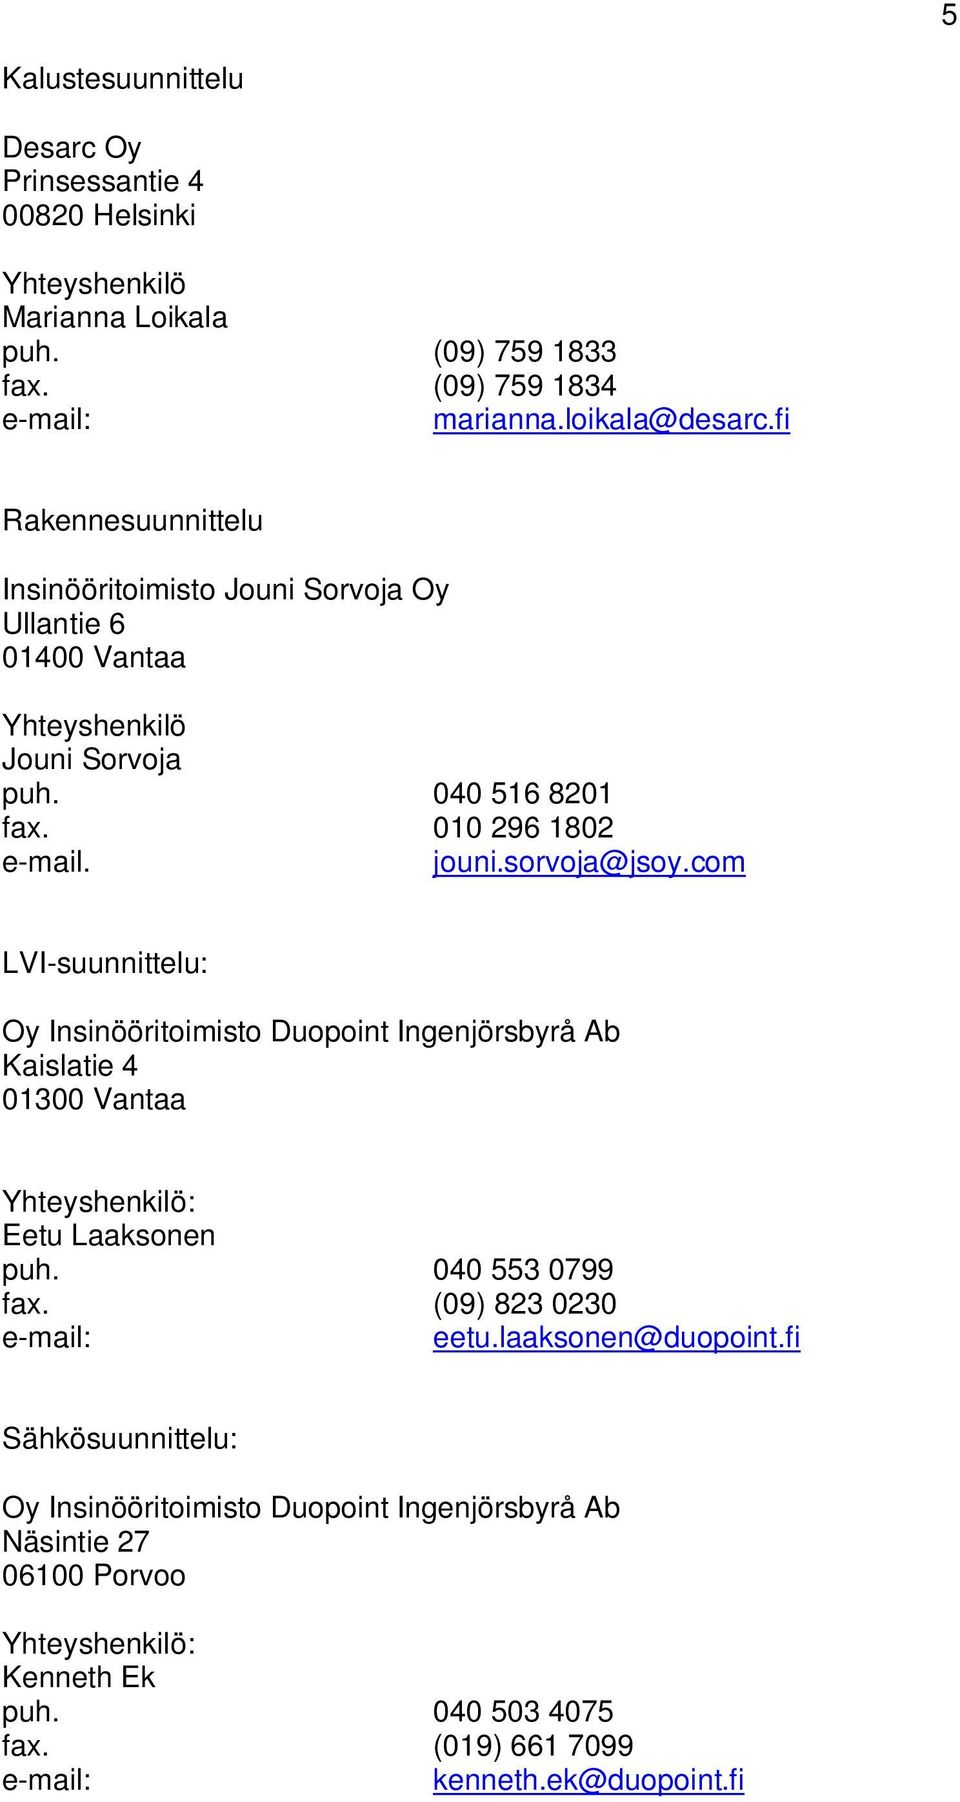 com LVI-suunnittelu: Oy Insinööritoimisto Duopoint Ingenjörsbyrå Ab Kaislatie 4 01300 Vantaa Yhteyshenkilö: Eetu Laaksonen puh. 040 553 0799 fax. (09) 823 0230 e-mail: eetu.